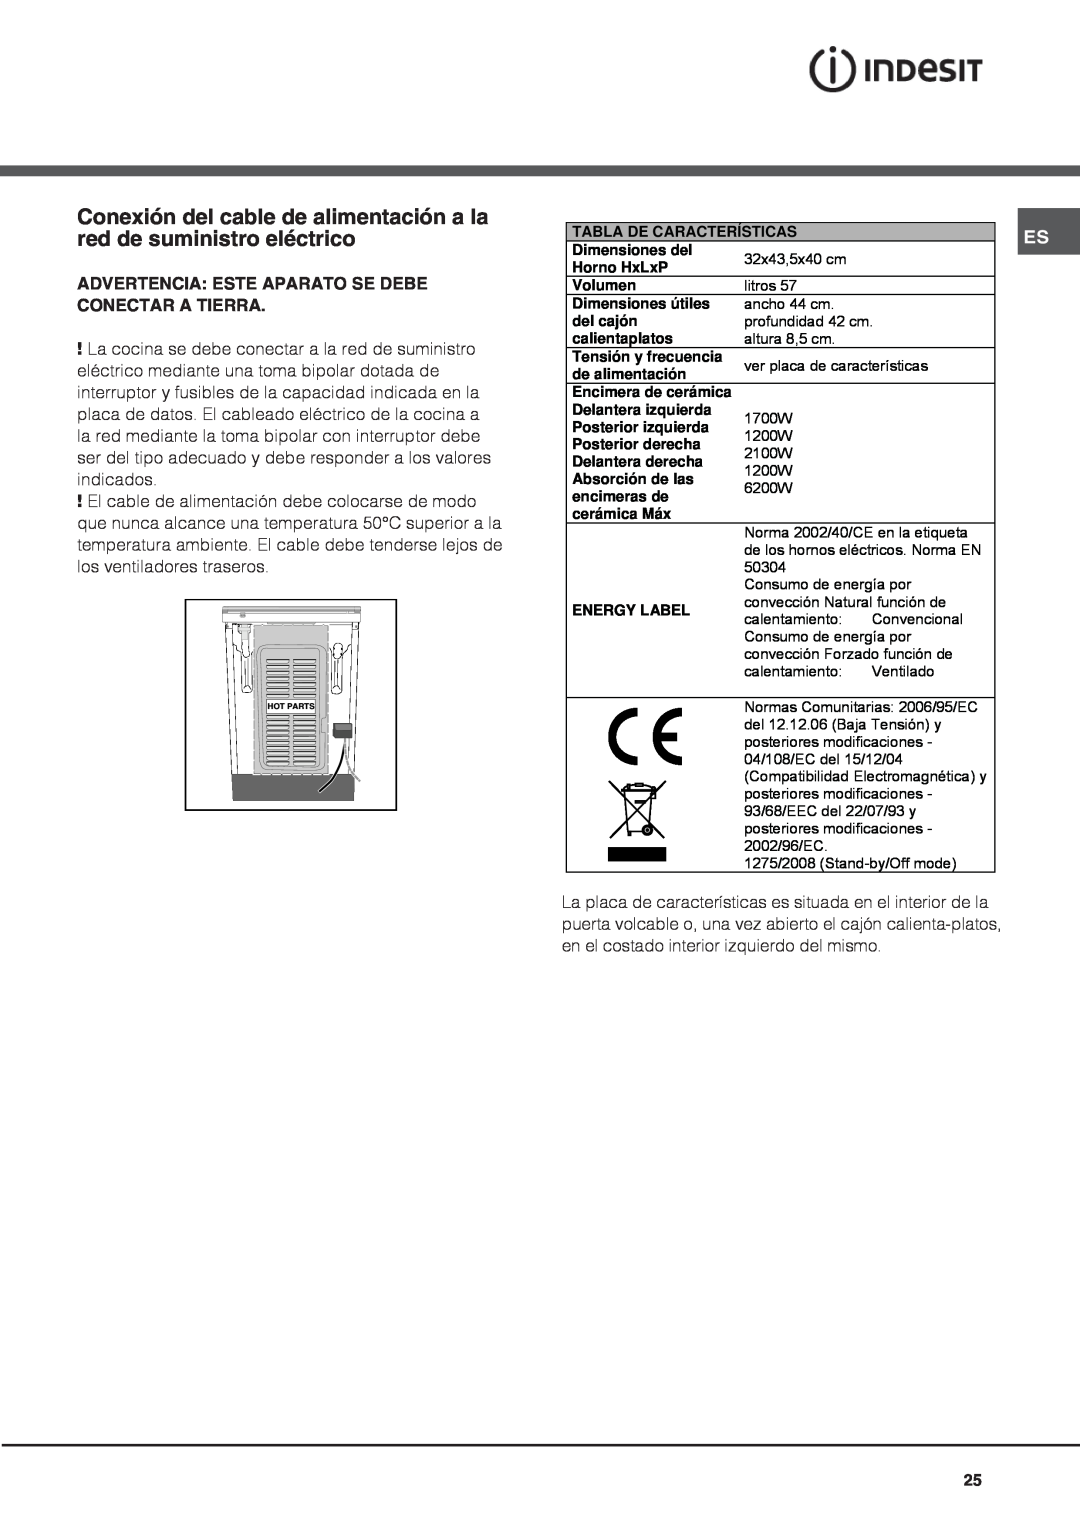 Indesit IS60C1 S manual Conexión del cable de alimentación a la red de suministro eléctrico 